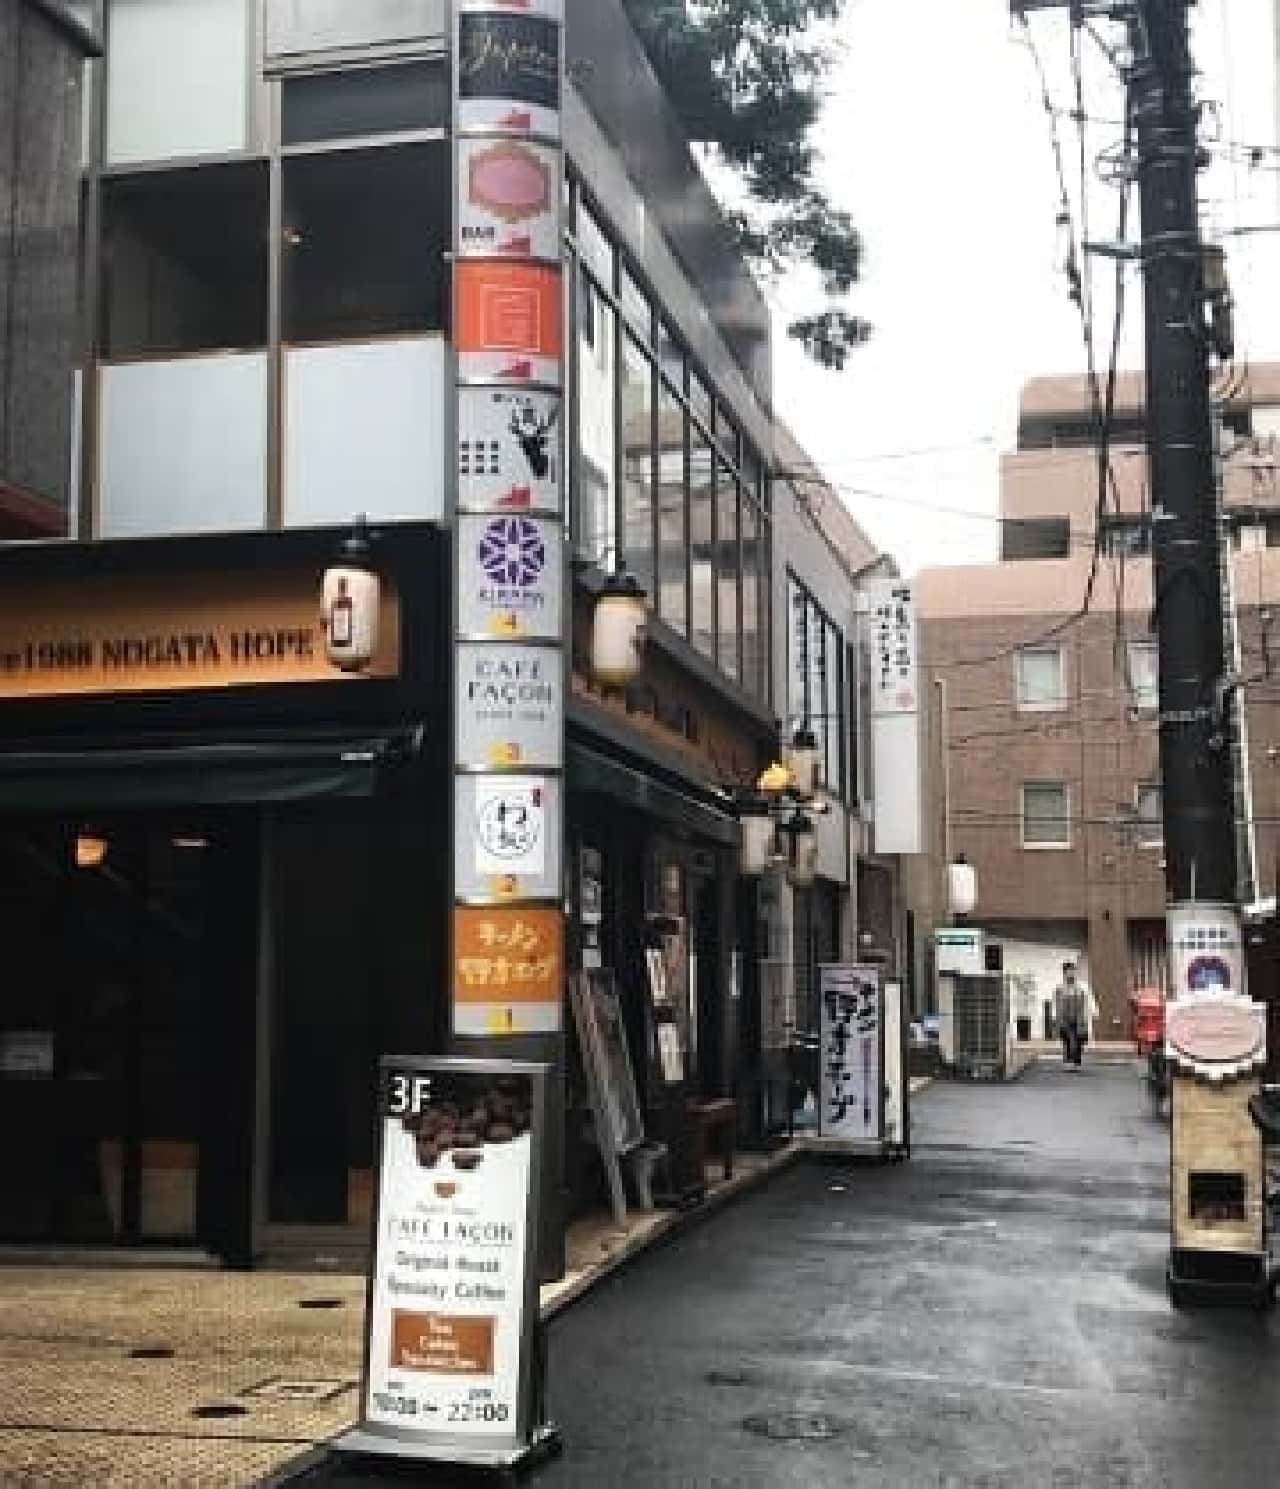 スペシャルティコーヒー豆専門店カフェ ファソン